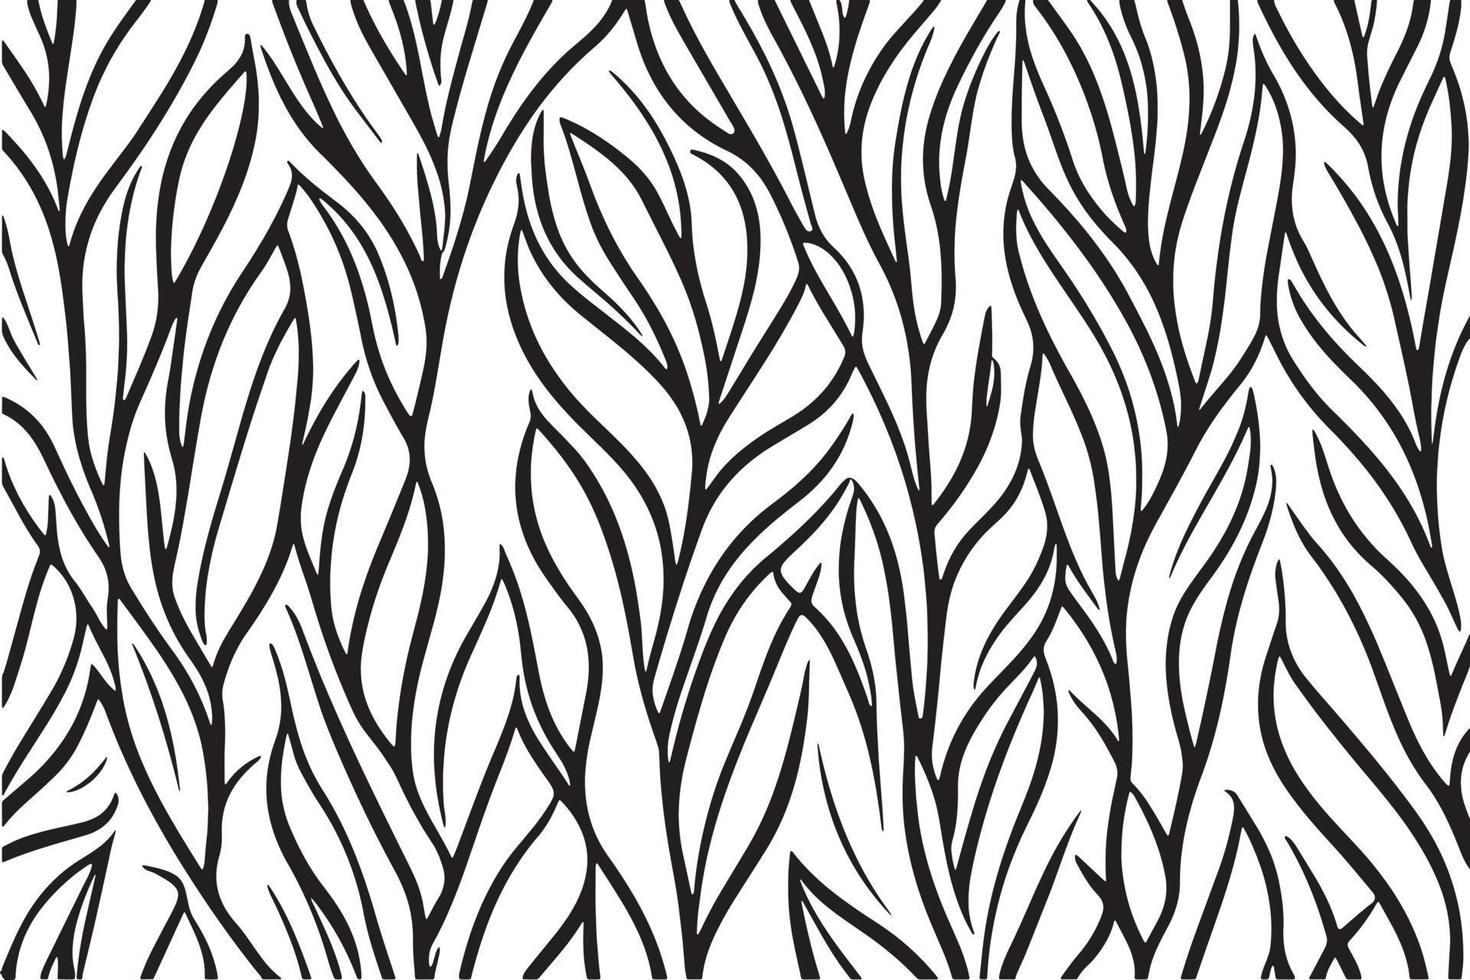 abstrakt svart och vit växter mönster vektor